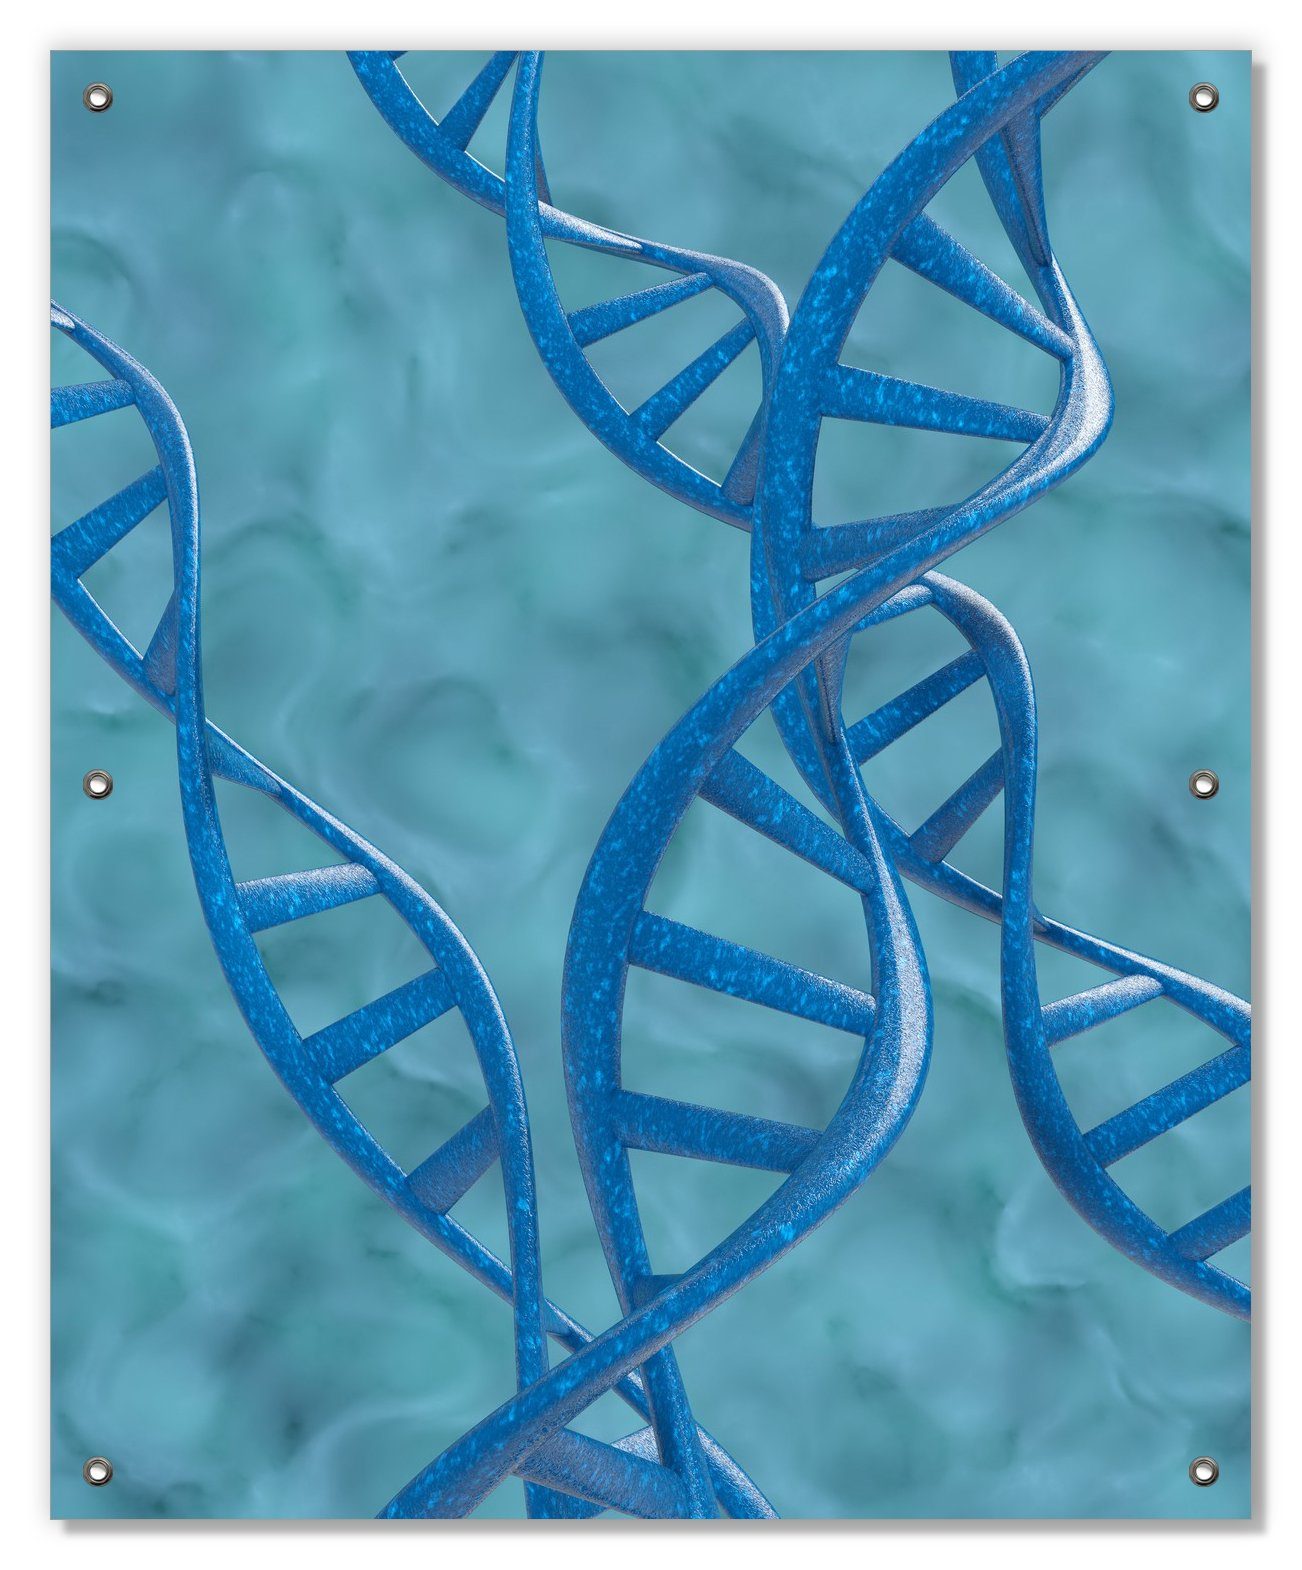 Sonnenschutz DNA-Strang in blau auf türkisem Hintergrund, Wallario, blickdicht, mit Saugnäpfen, wiederablösbar und wiederverwendbar